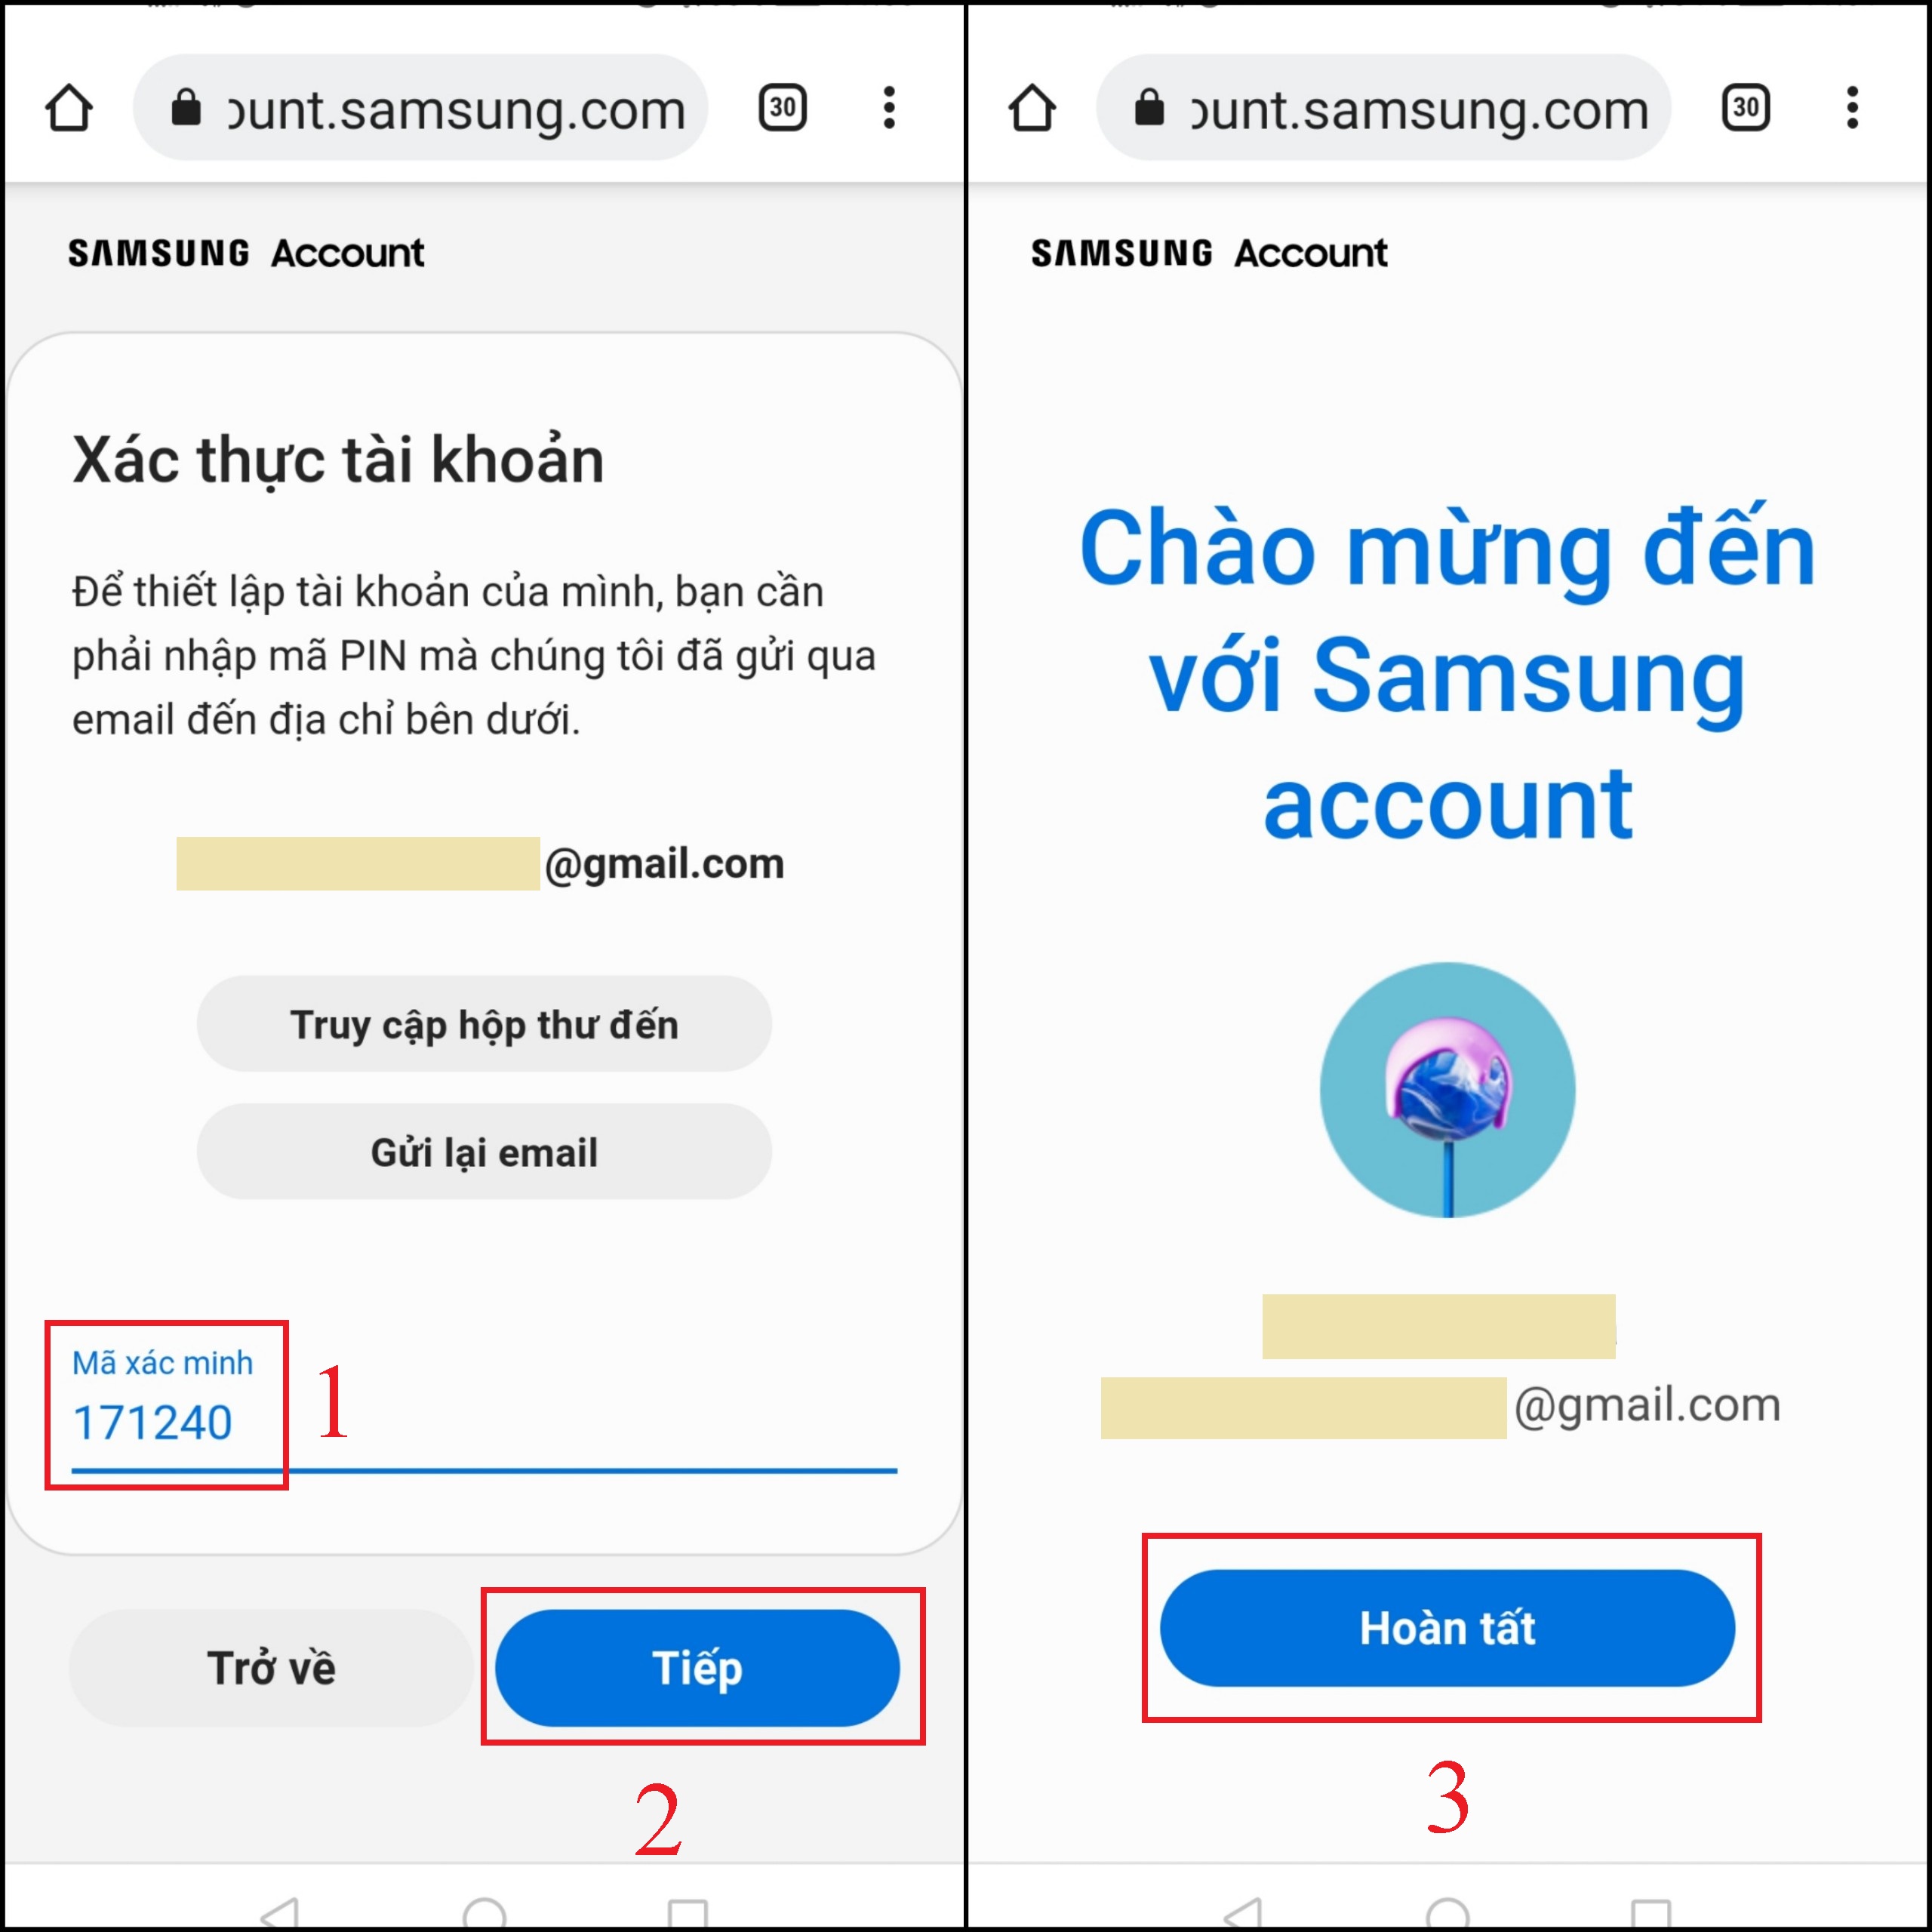 Sau khi xác thực thành công, bạn có thể bắt đầu sử dụng Samsung Account